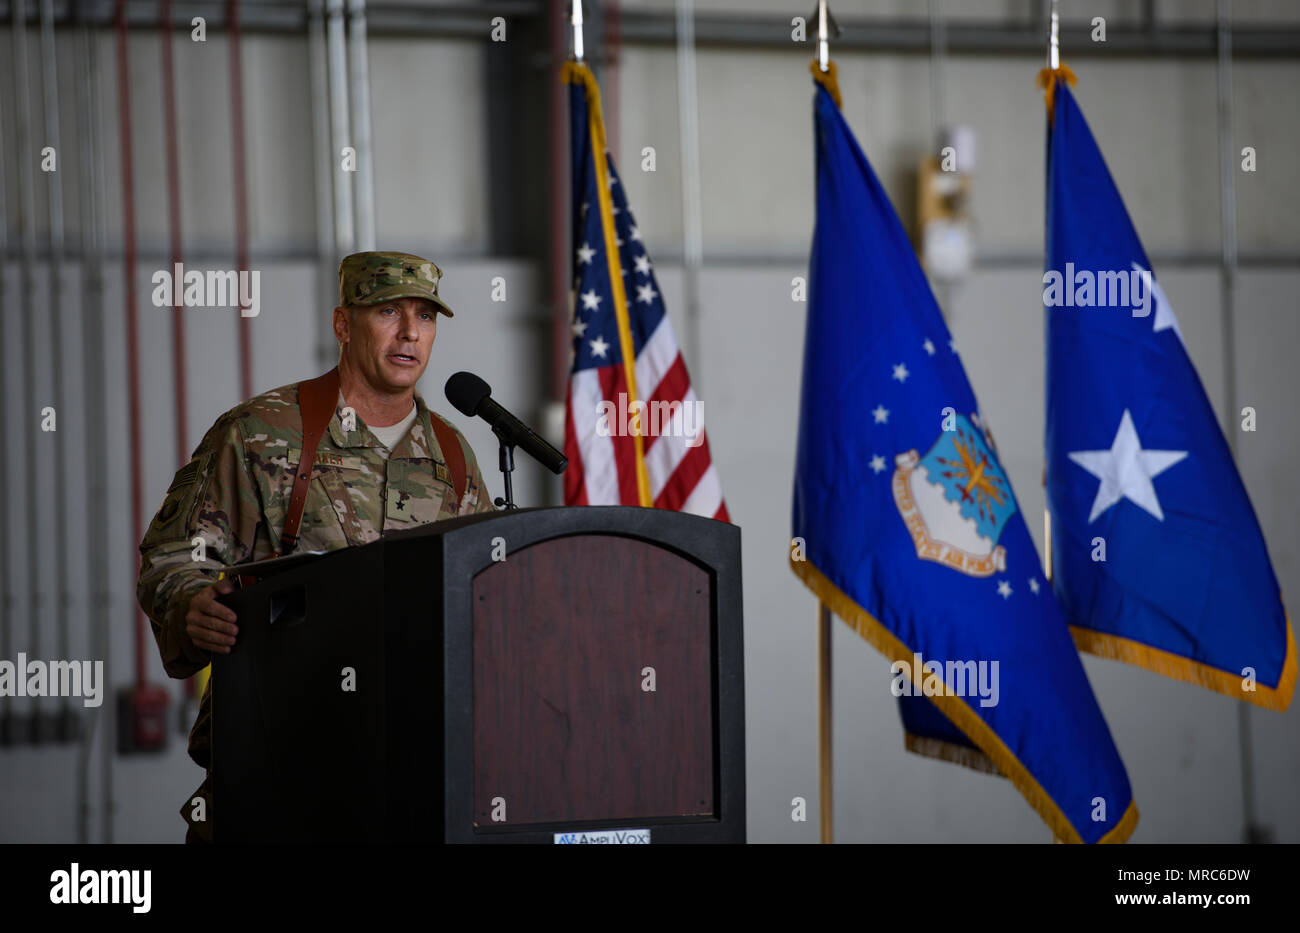 Brig. Gen. Craig Baker, el comandante de ala expedicionaria aérea 455A, habla con 455AEW de aviadores y distinguidos invitados durante una ceremonia de cambio de mando en el aeródromo de Bagram, Afganistán, 3 de junio de 2017. Como el comandante de la 455AEW, Baker dirigirá la premier de aire de contraterrorismo de la misión en Afganistán. Las operaciones del ala que el decidido apoyo de la OTAN a la misión con éxito, asesorar, capacitar y prestar asistencia a las fuerzas militares y de seguridad de Afganistán, y restringir y disuadir la amenaza terrorista en la región. (Ee.Uu. Foto de la fuerza aérea por el Sargento. Benjamin Gonsier) Foto de stock